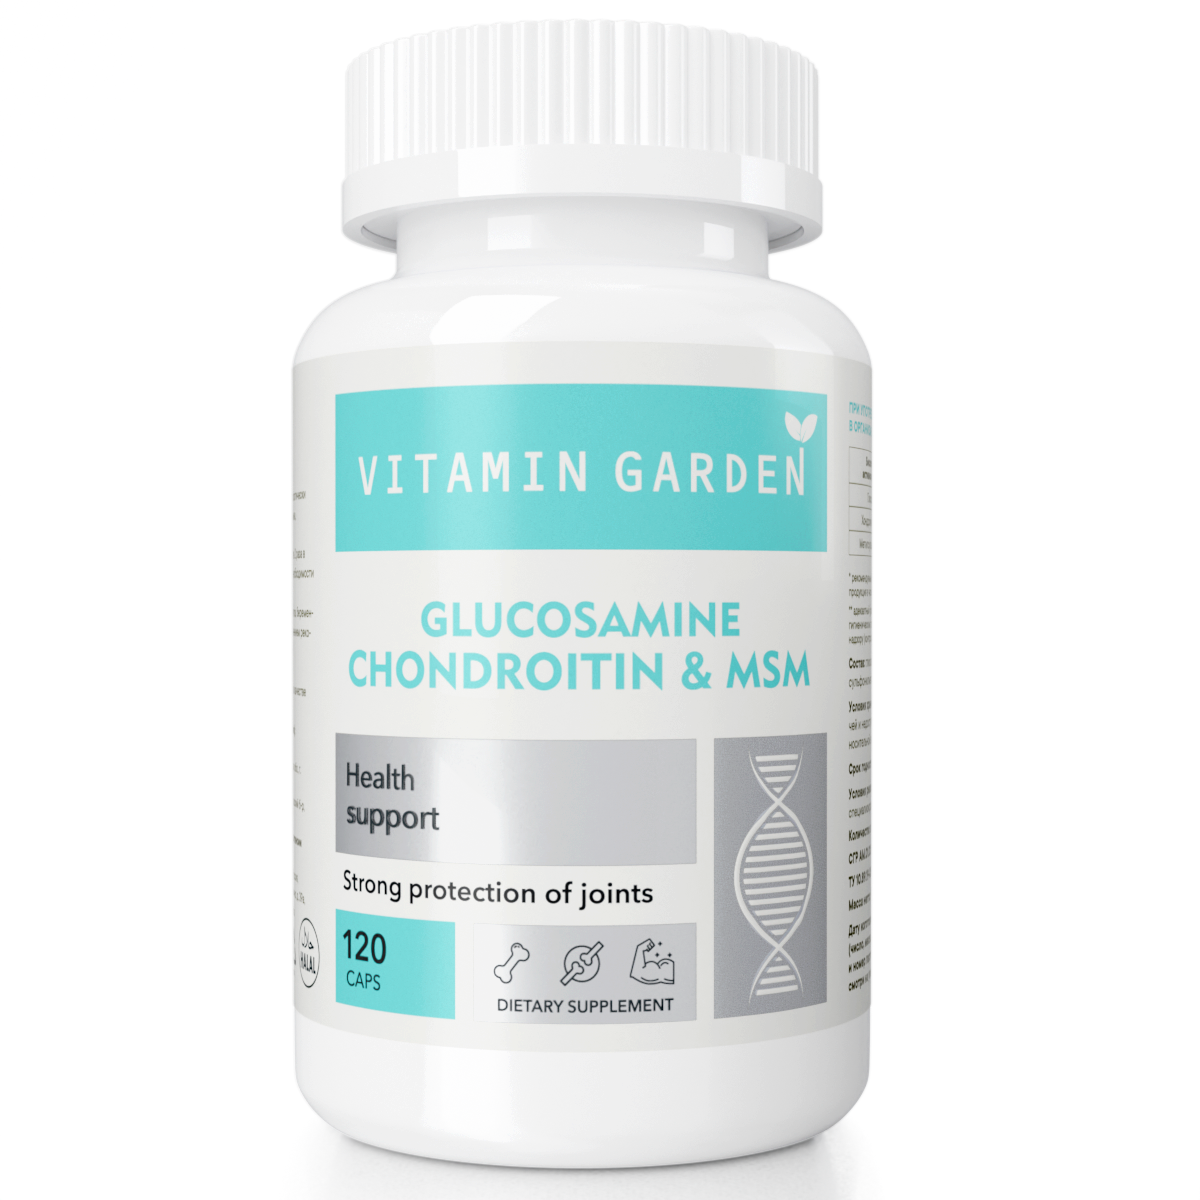 Глюкозамин Хондроитин МСМ - комплекс для здоровья суставов и связок, для спорта и тренировок, (Glucosamine Chondroitin MSM) 120 капсул.